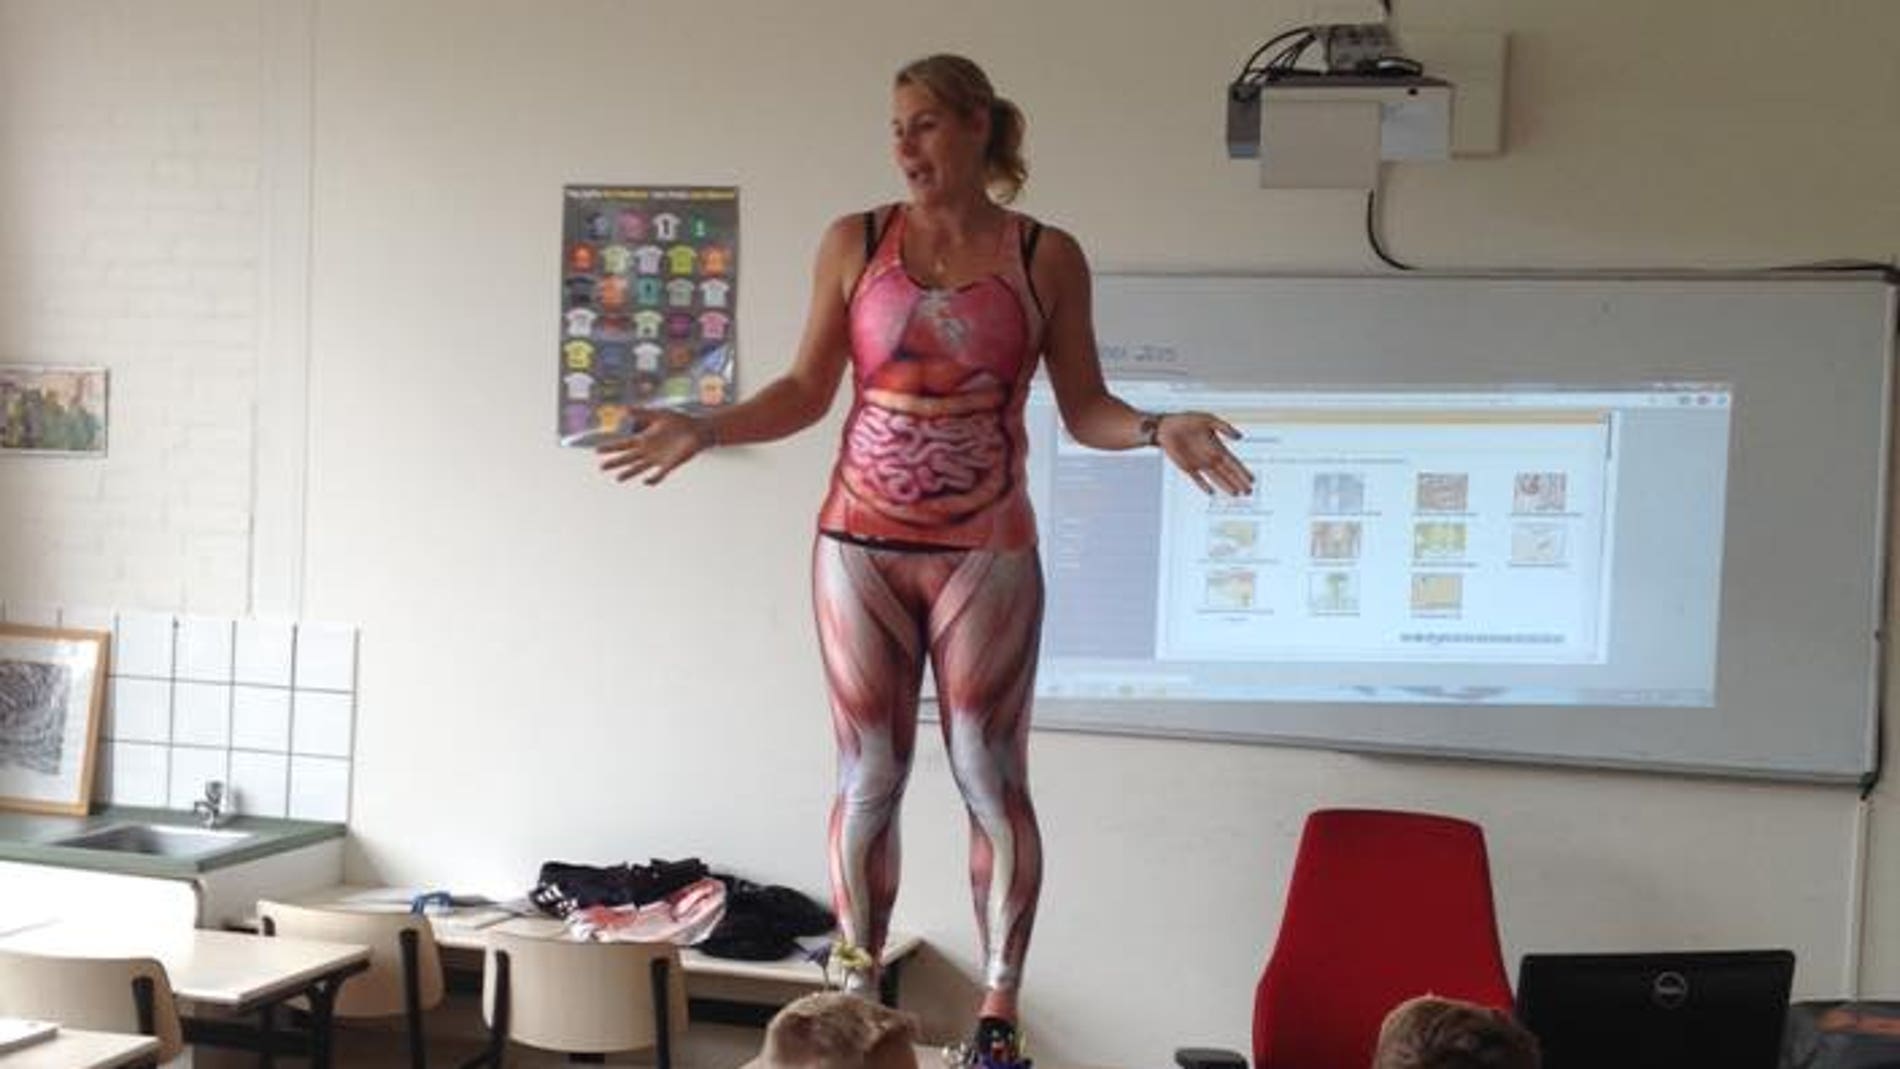 La profesora llevaba un traje que mostraba la anatomía interna del cuerpo humano